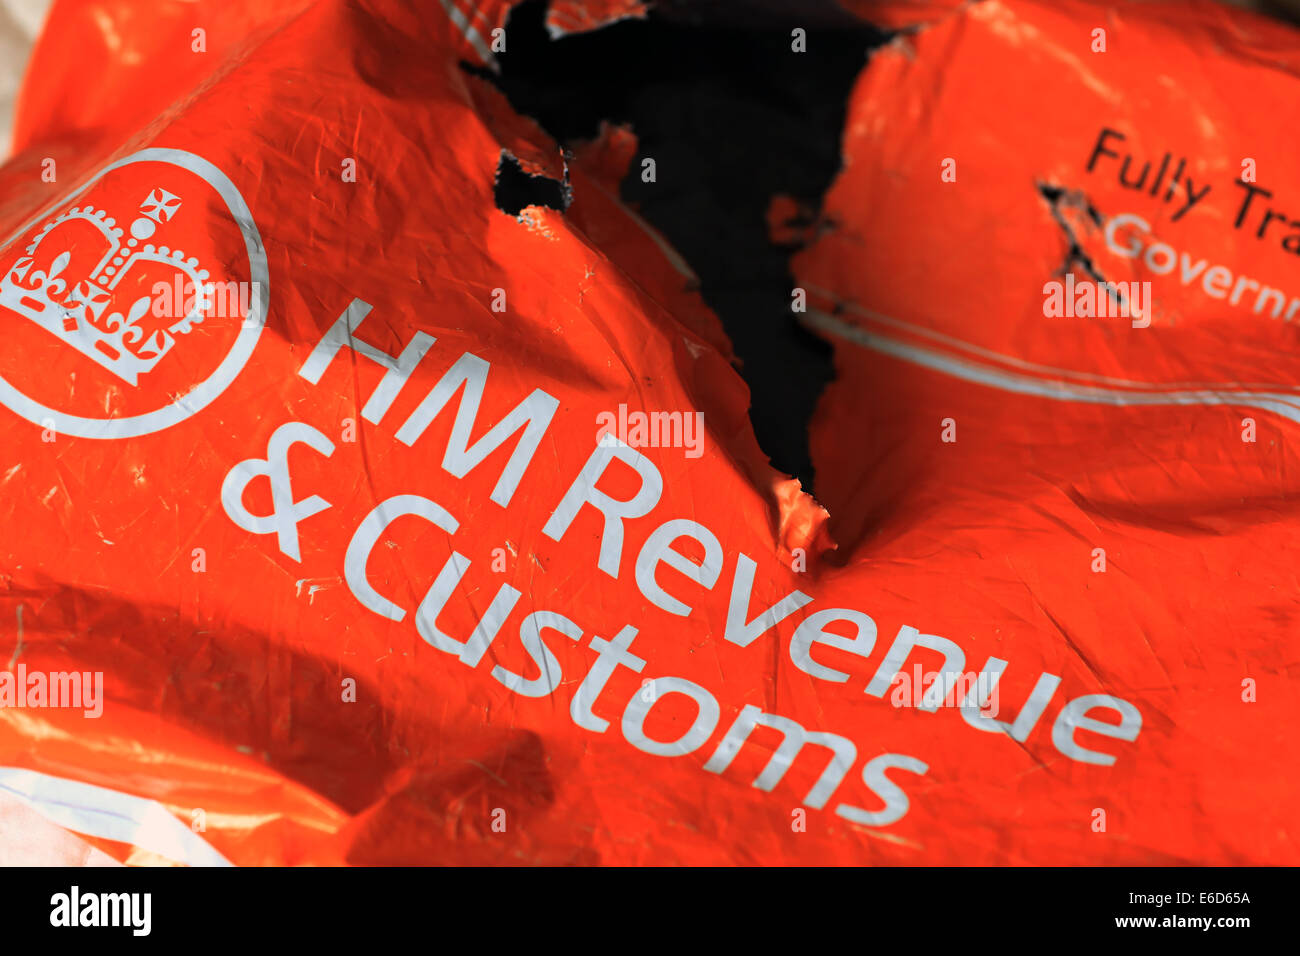 HM Revenue & Customs, Her Majesty's Revenue and Customs, déchiré et déchiré de l'paquet orange HMRC Banque D'Images